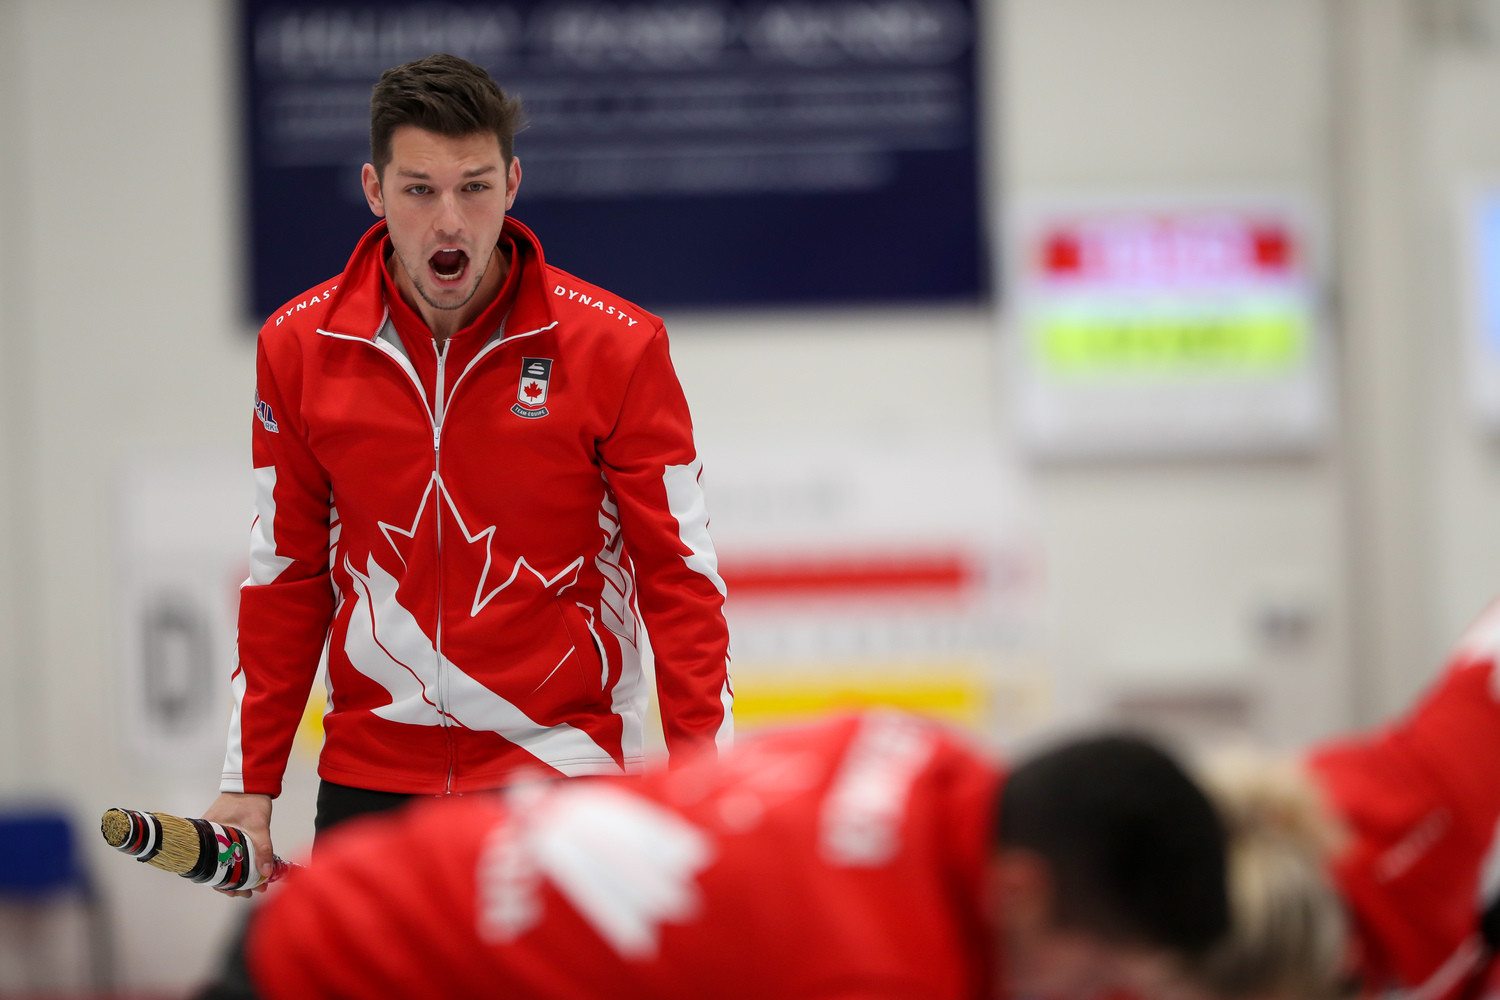 Canada edge Hong Kong to maintain perfect record at World Mixed Curling Championship